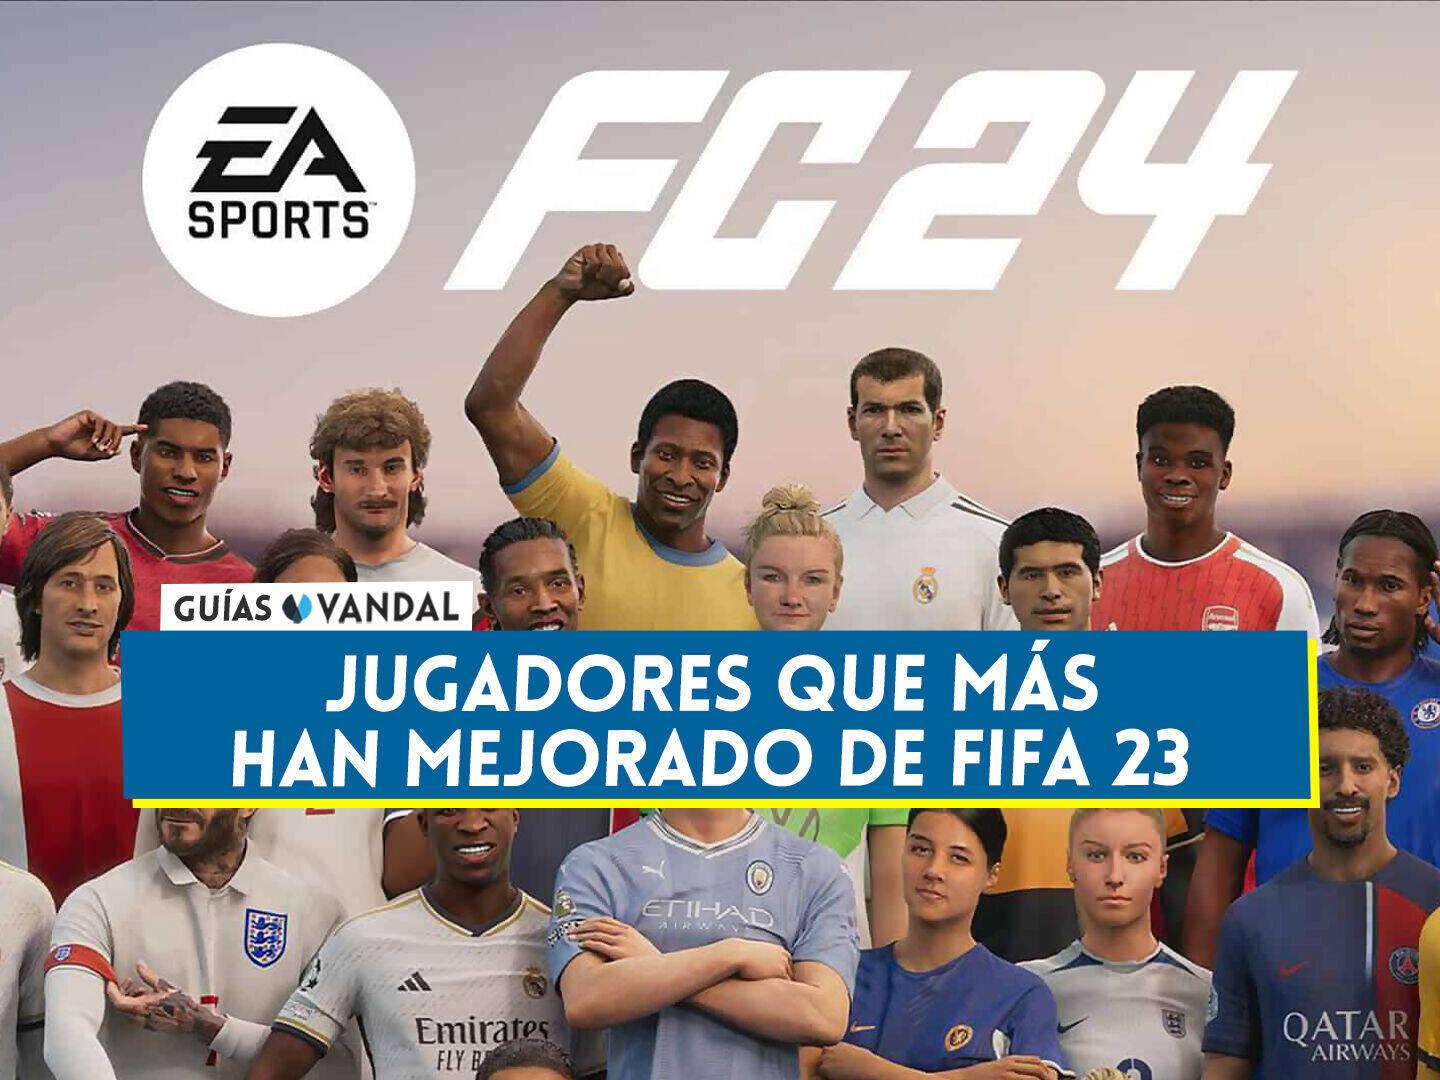 EA Sports FC 24: Los jugadores más rápidos de cada principal liga